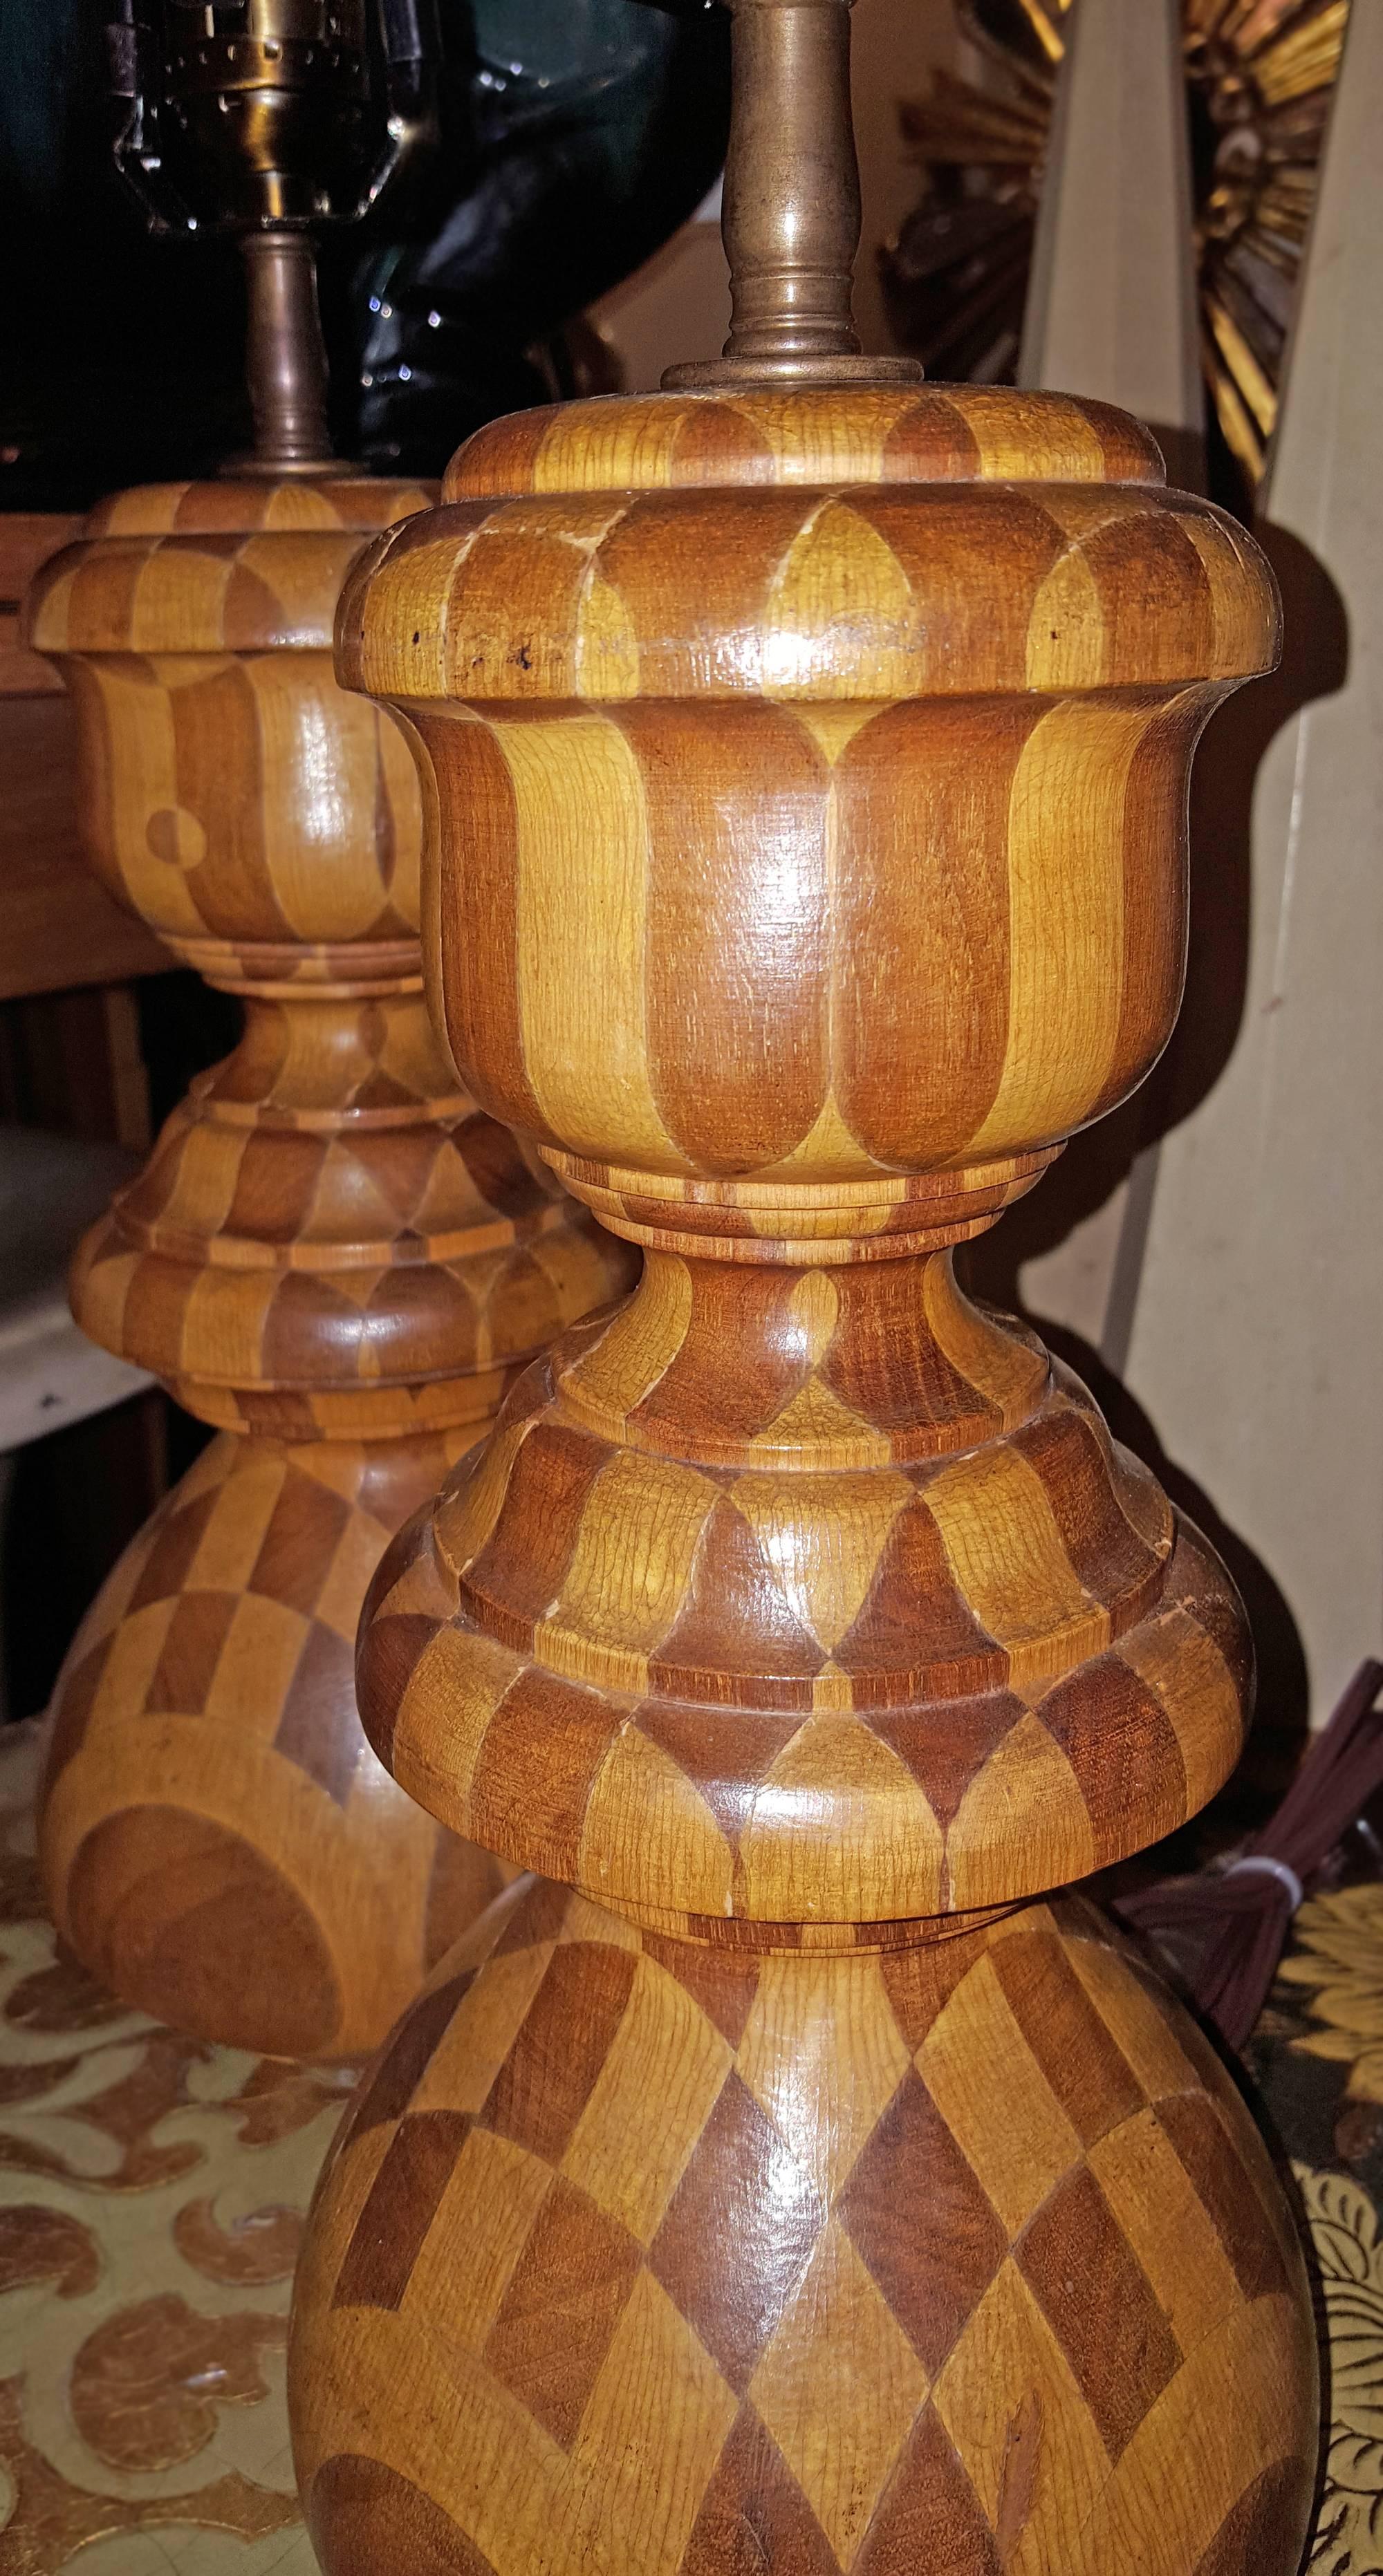 Paire de lampes de table américaines des années 1930, en bois incrusté de motifs en damier.

Mesures :
12.5